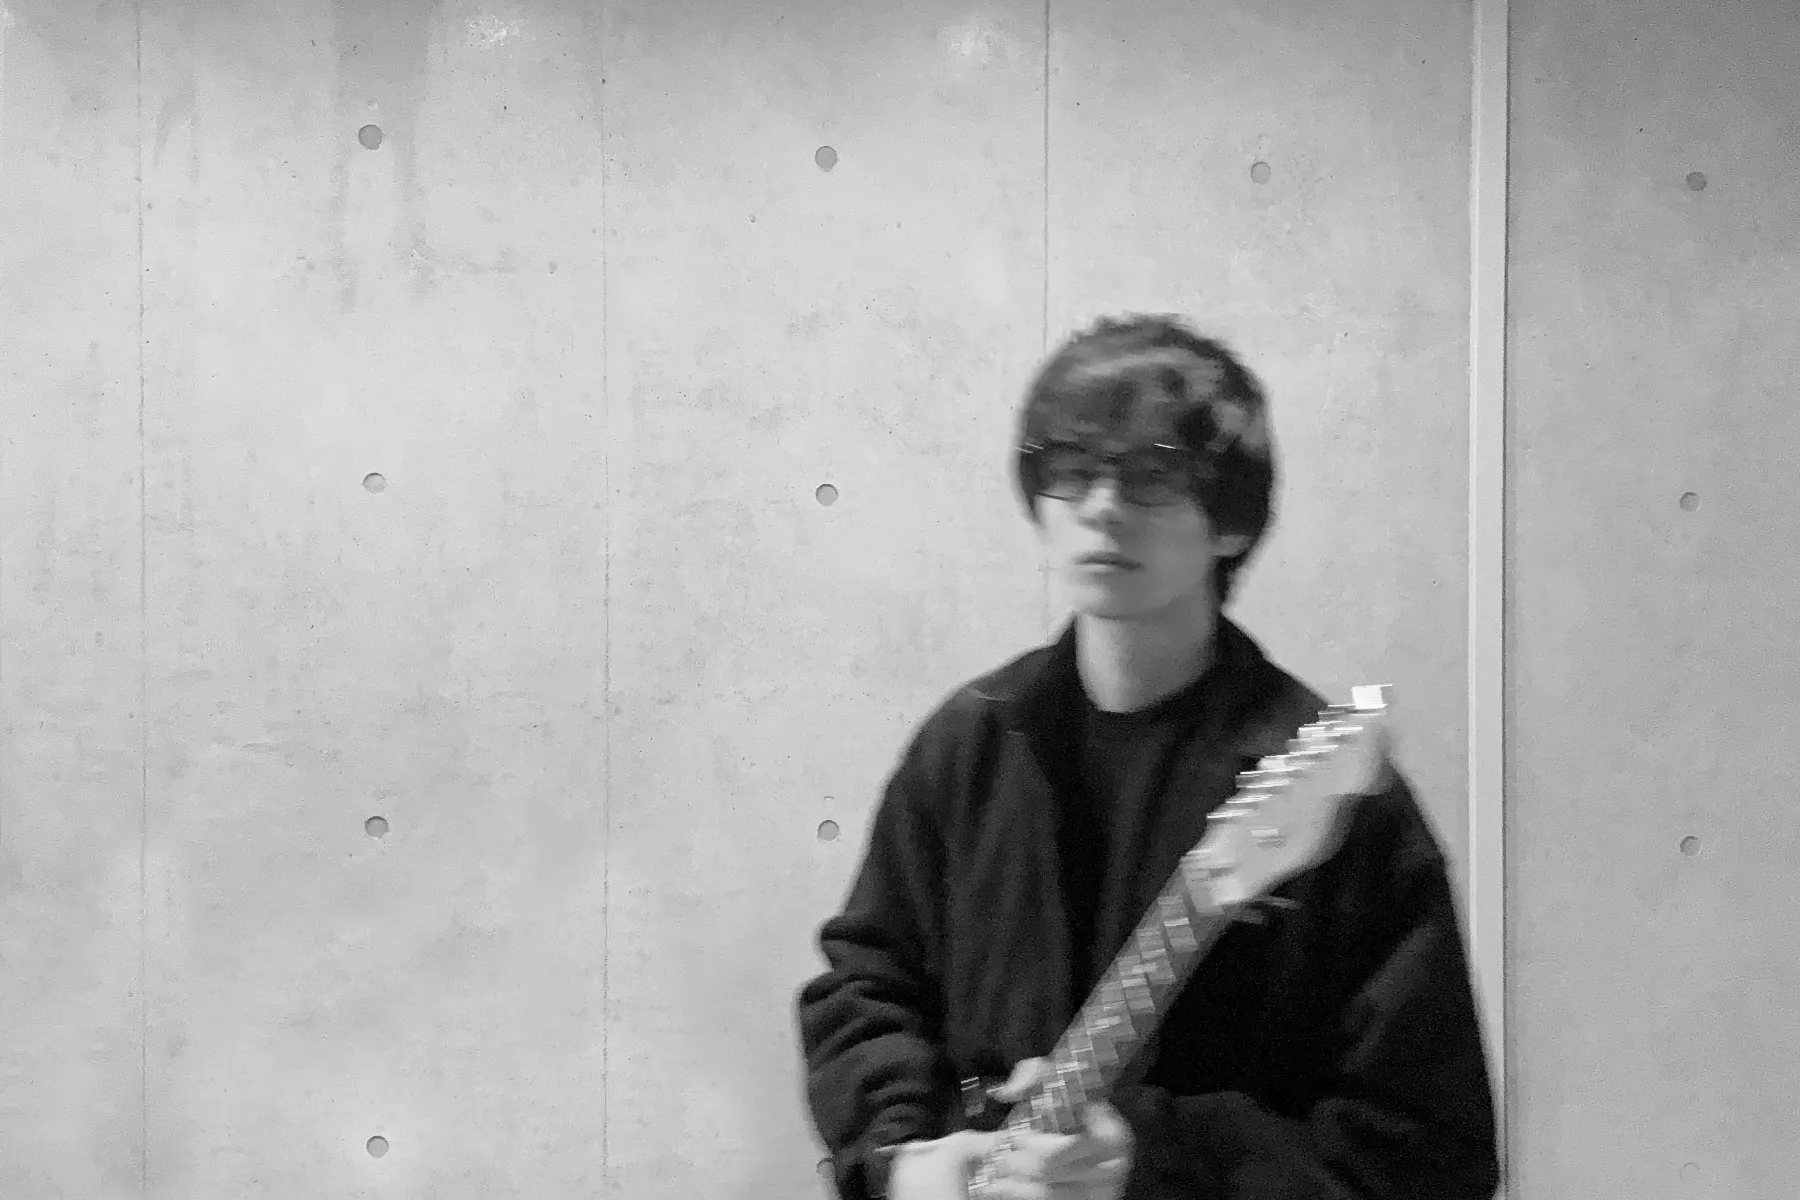 眼鏡をかけてギターを持つ人がぼやけて映されている白黒写真